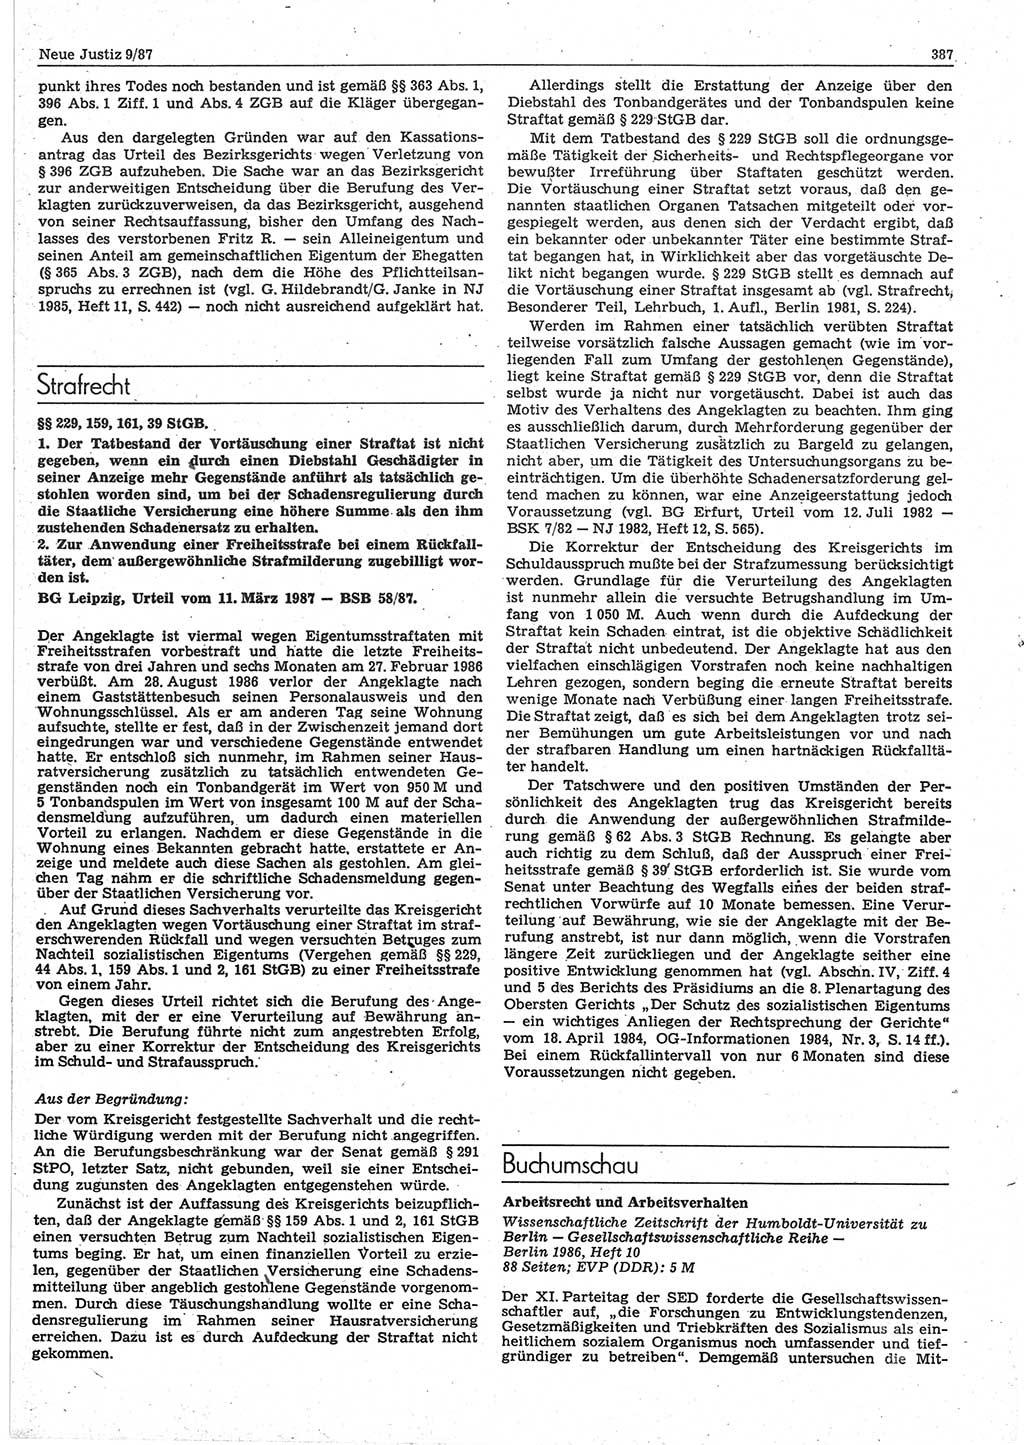 Neue Justiz (NJ), Zeitschrift für sozialistisches Recht und Gesetzlichkeit [Deutsche Demokratische Republik (DDR)], 41. Jahrgang 1987, Seite 387 (NJ DDR 1987, S. 387)